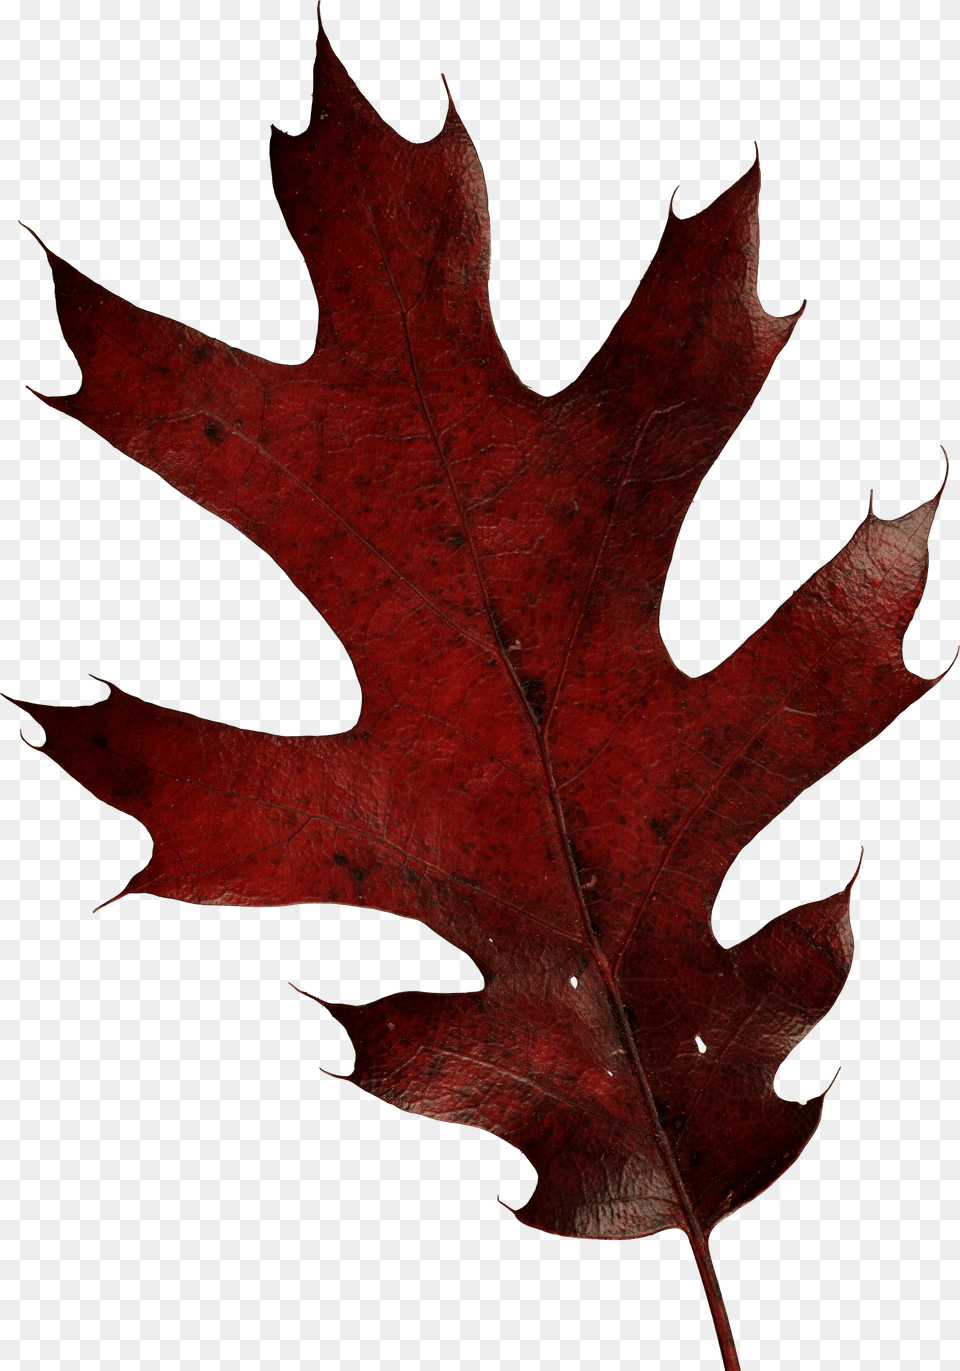 Oak Leaf Transparent, Plant, Tree, Maple Leaf, Maple Png Image